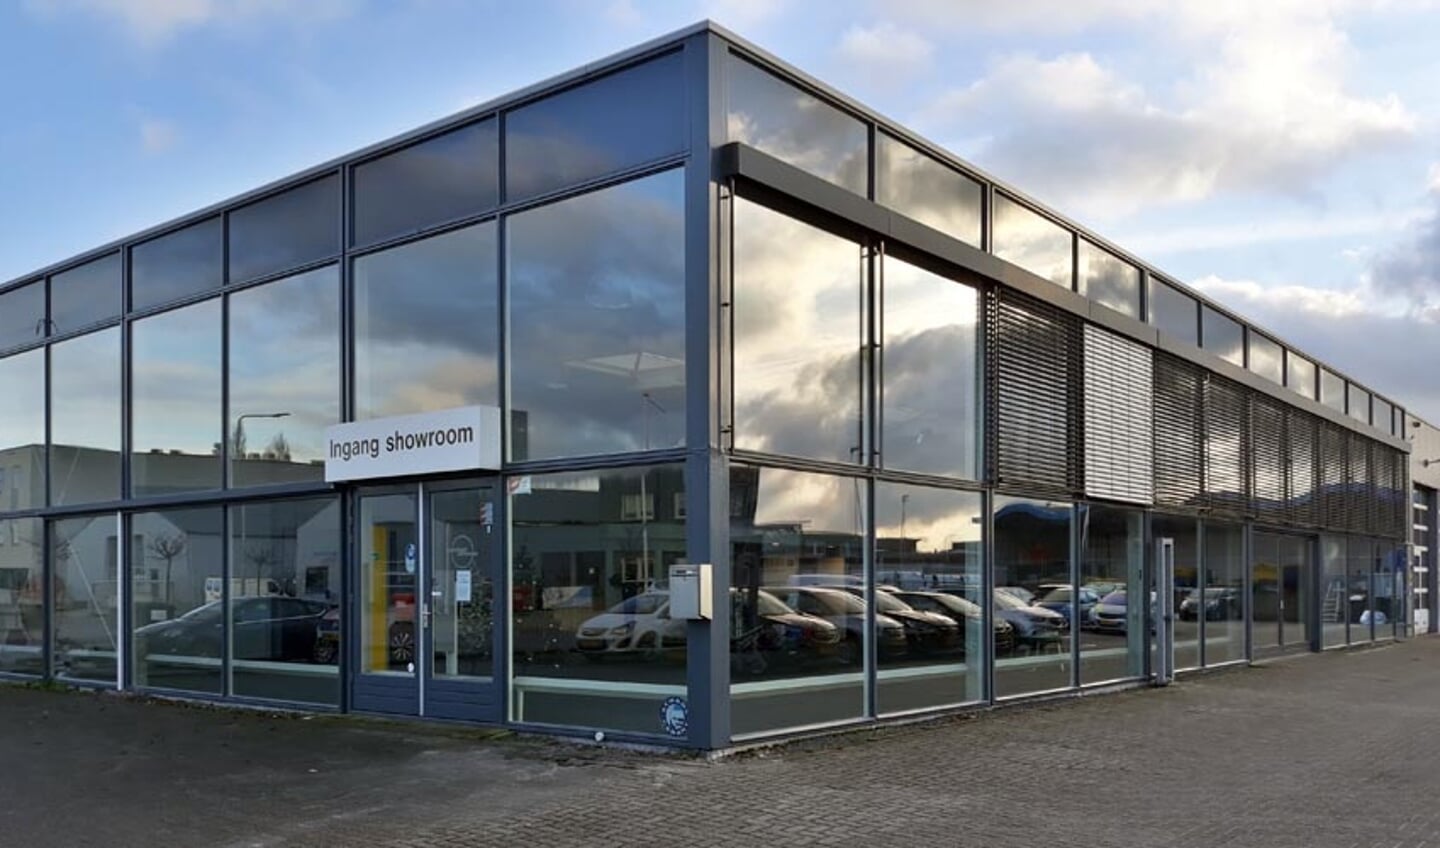 Wat het college betreft verhuist Voedselbank Kampen naar deze showroom op Kleiland in IJsselmuiden